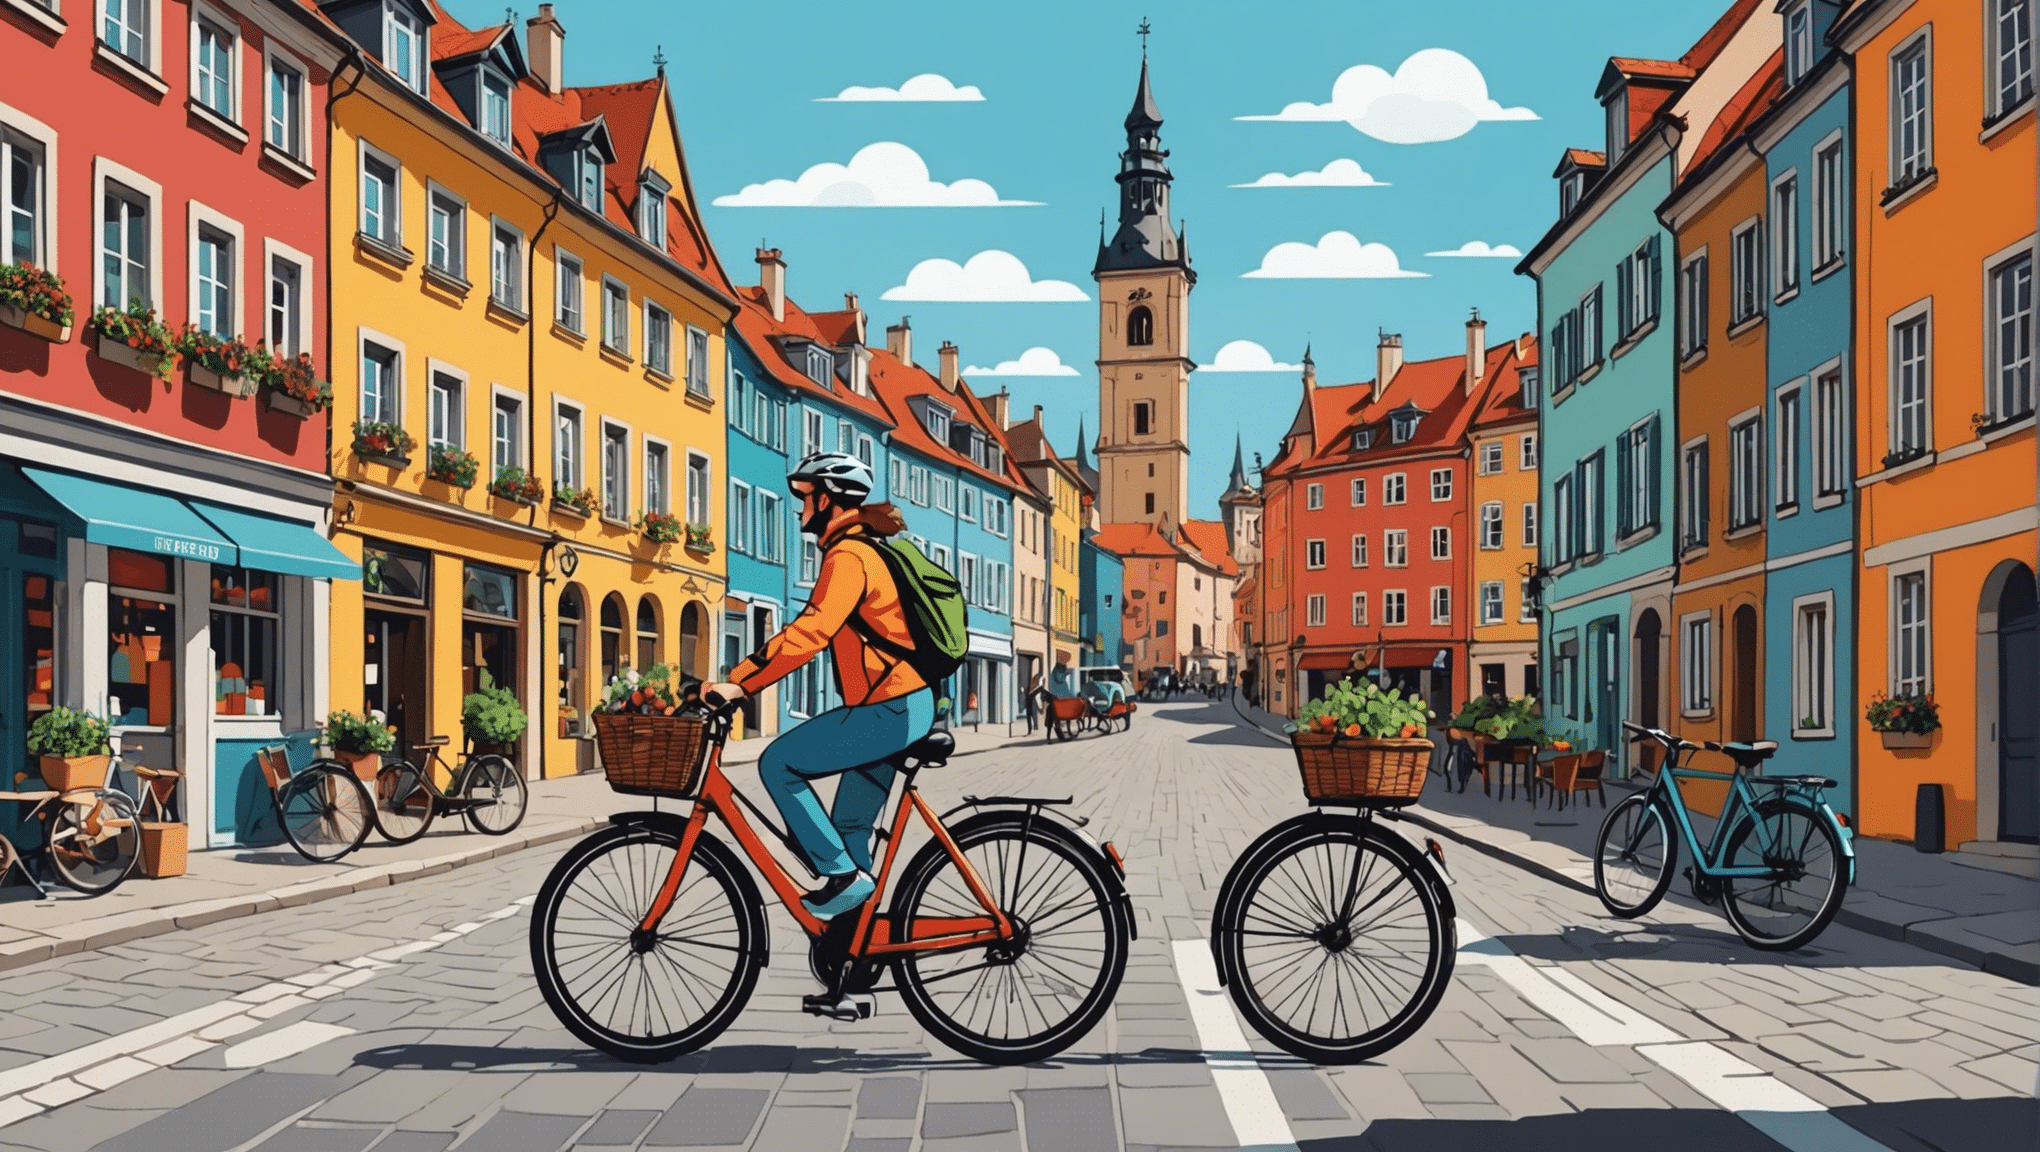 यूरोप में साइकिल यात्रा के शौकीनों के लिए अवश्य देखने योग्य स्थलों की खोज करें। बाइक से महाद्वीप का भ्रमण करें और एक अनोखे अनुभव का आनंद लें।